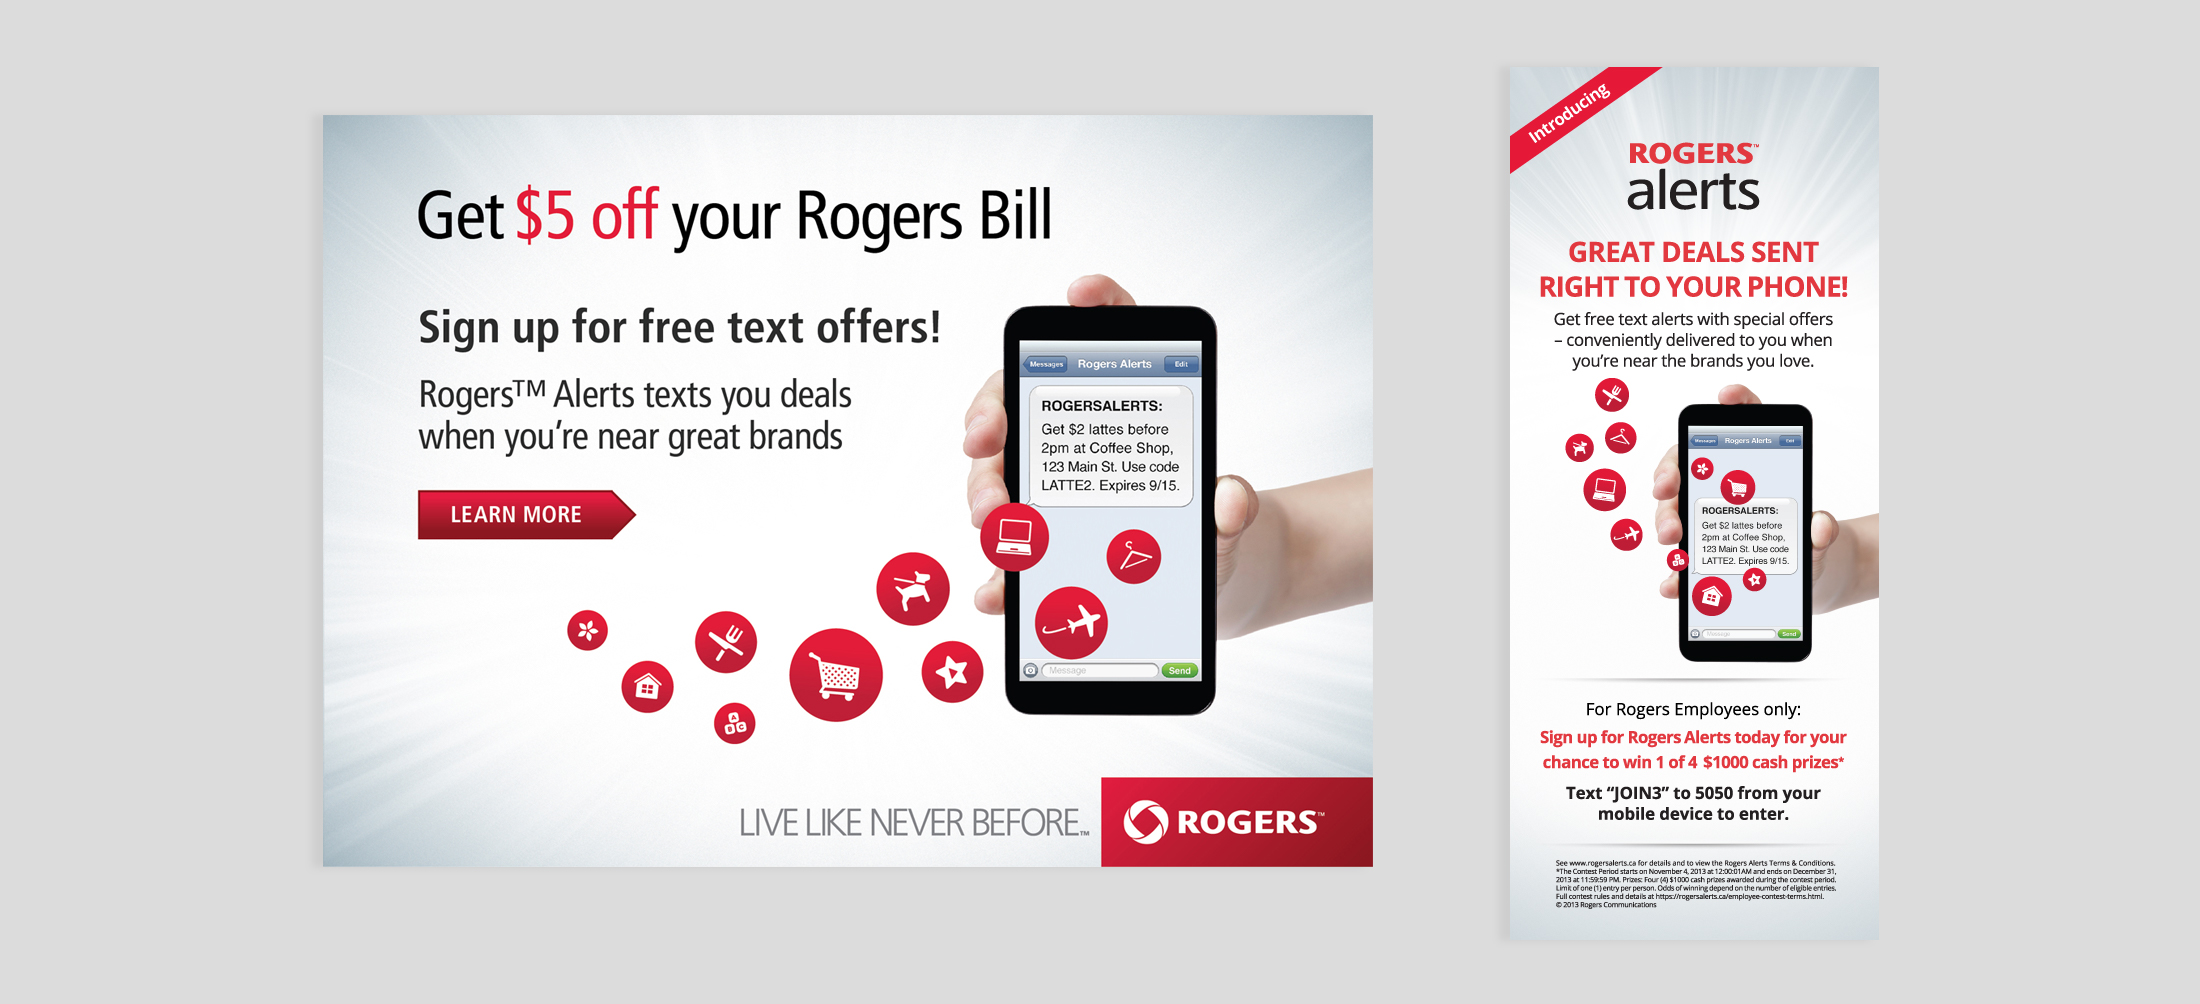 Rogers Alerts : Branding, Creative Design : Octopus Ink